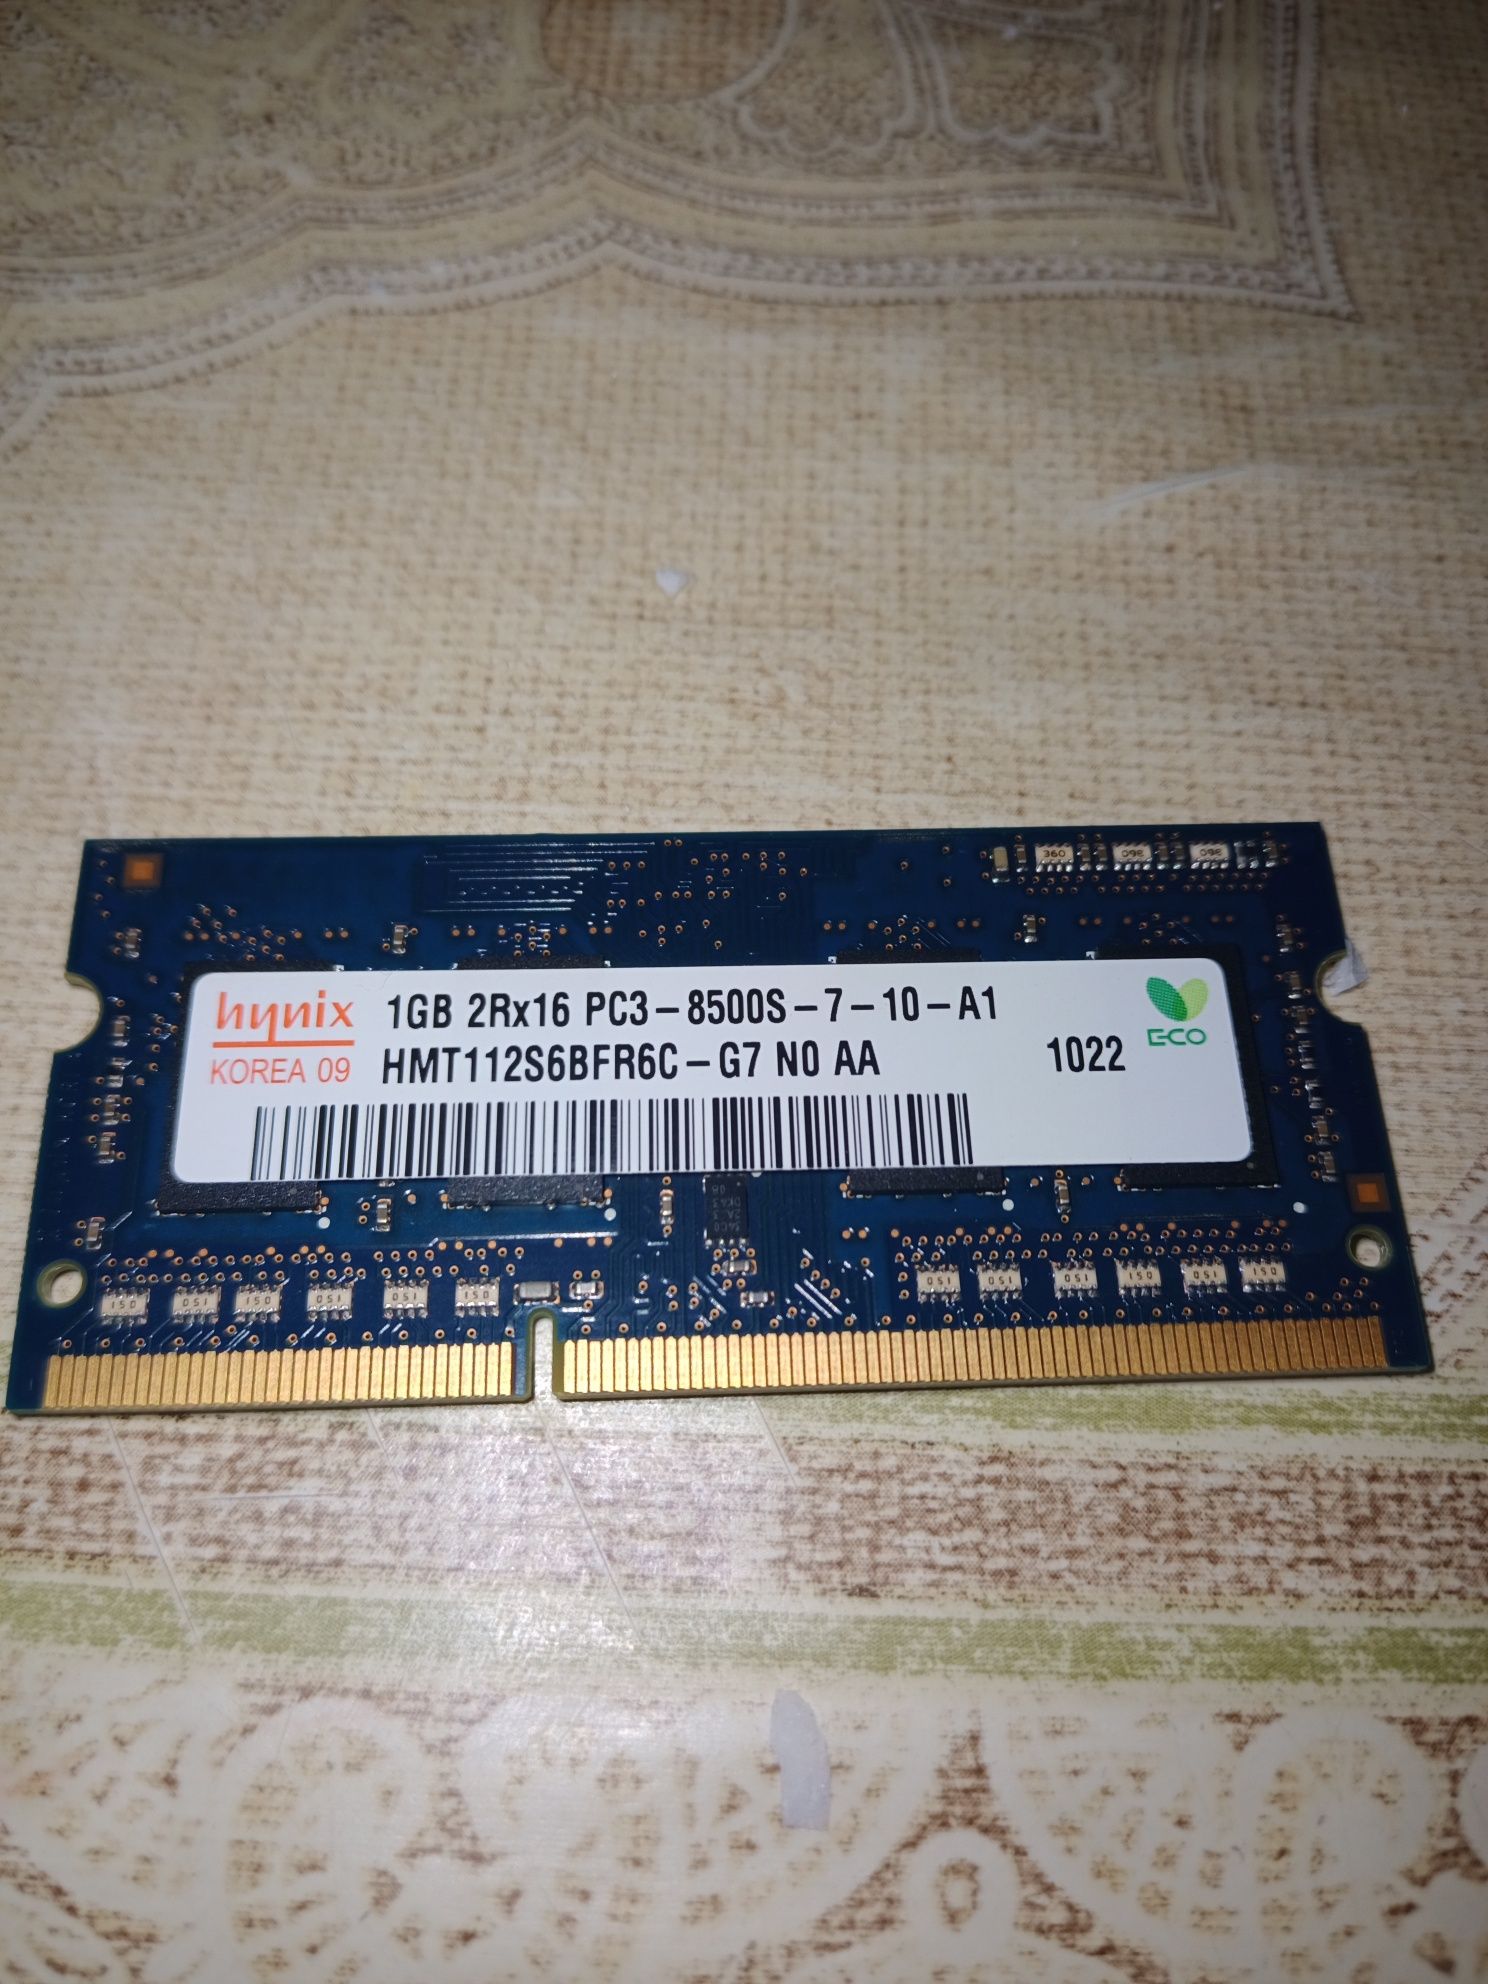 Hynixs SODIMM 1 GB 2Rx16 PC3-8500s